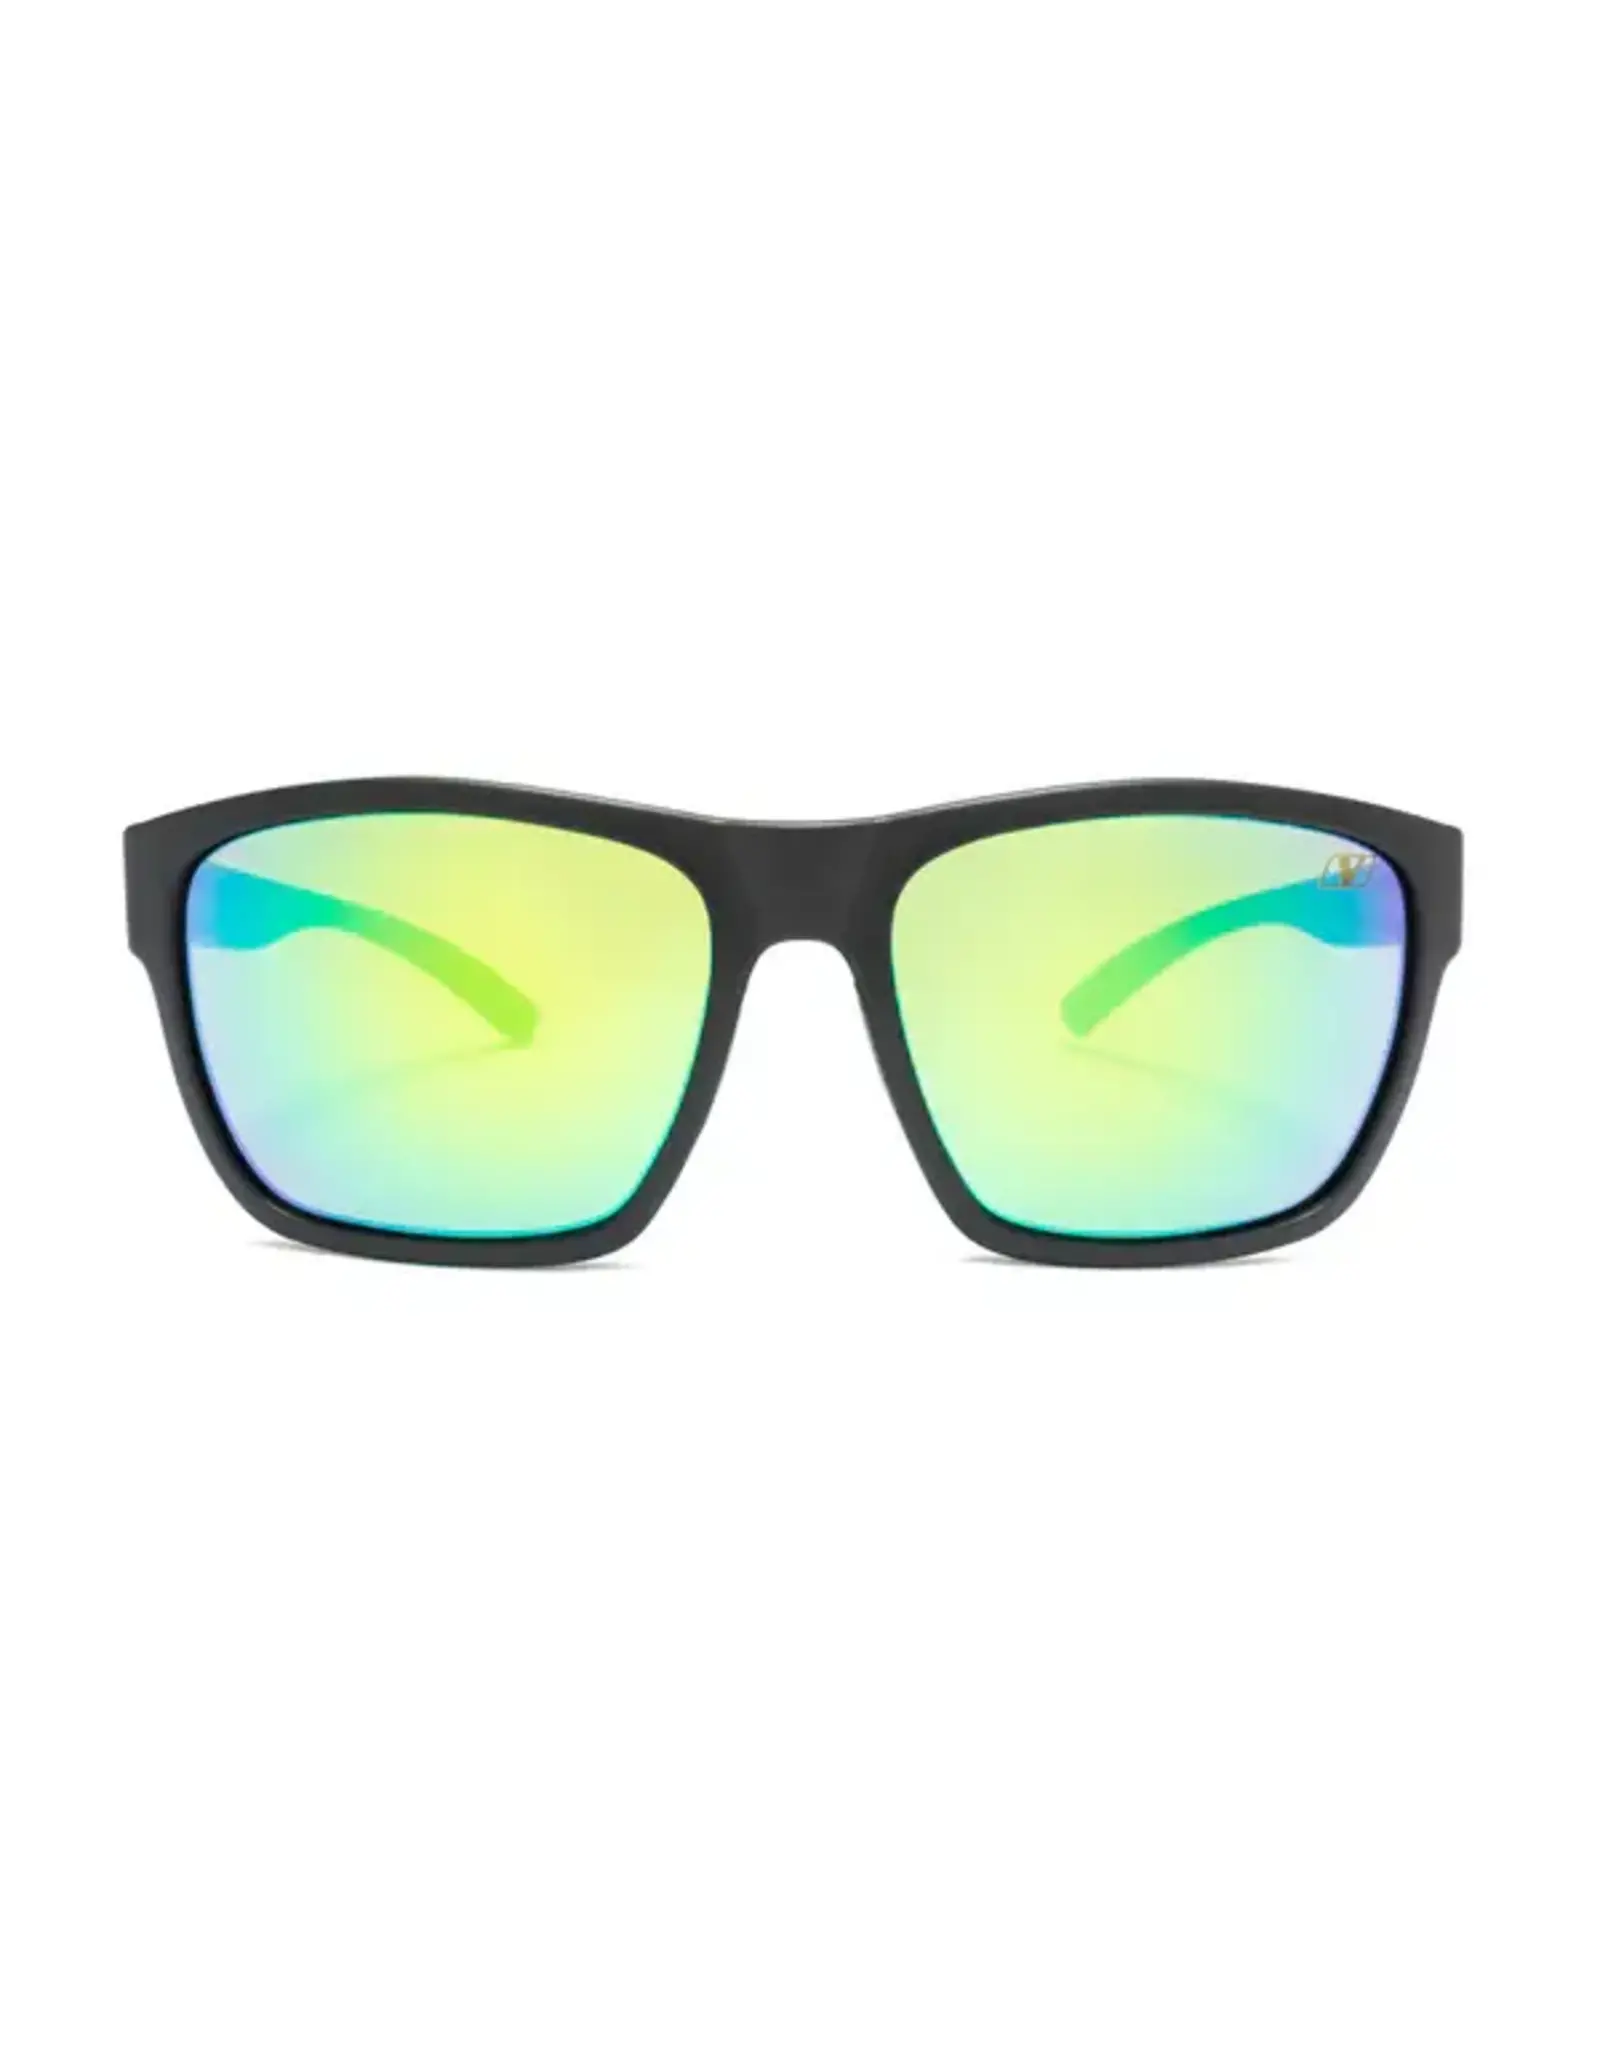 Vigor Corales Polarized Square Sunglasses Matte Black Green Revo